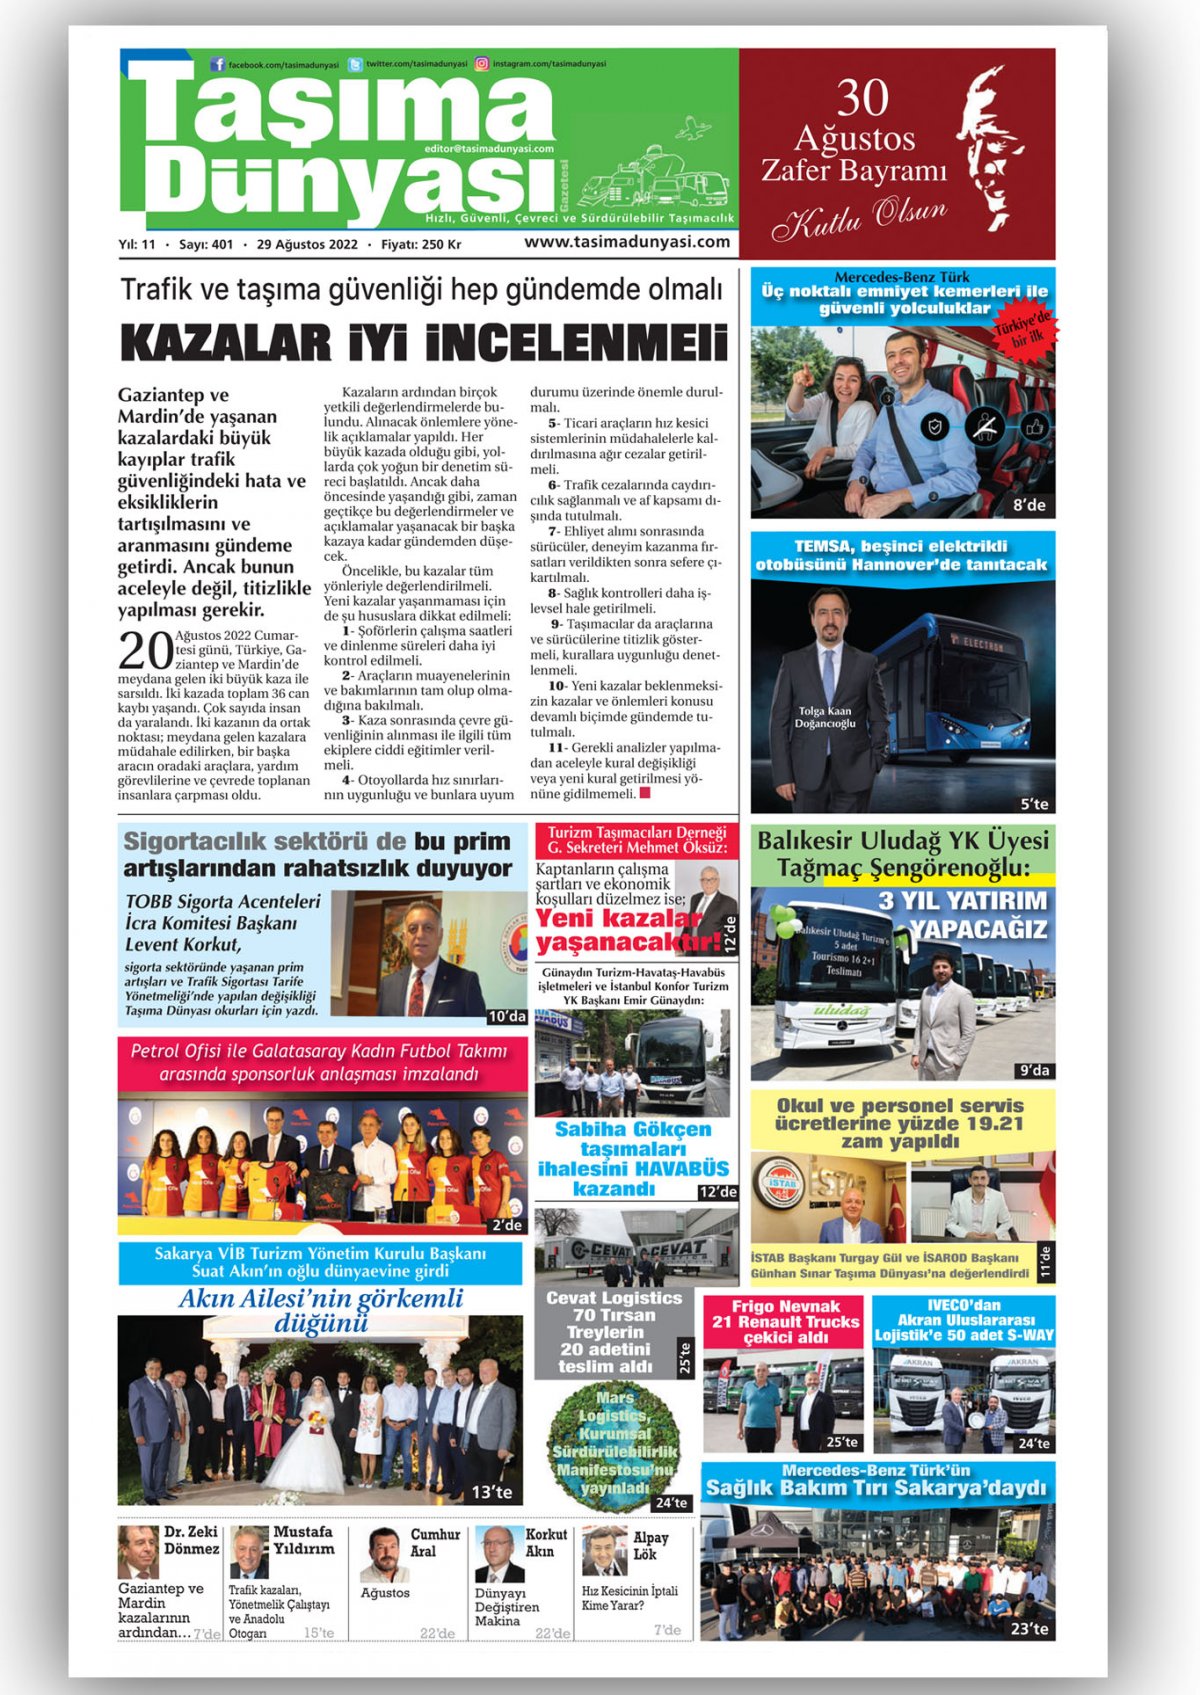 Taşıma Dünyası Gazetesi - 29.08.2022 Manşeti